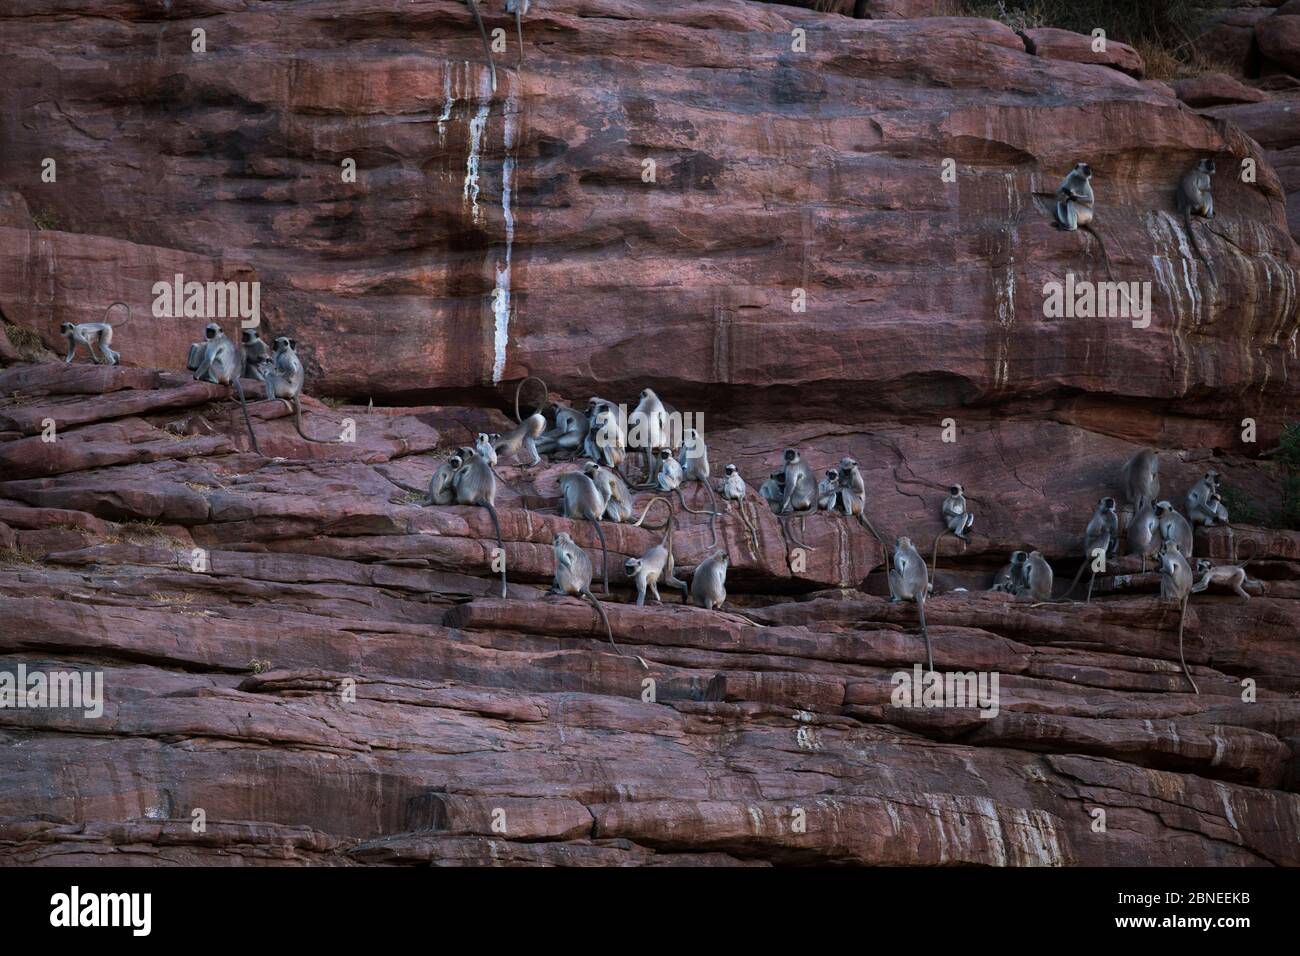 Südebene graue Langur / Hanuman langurs (Semnopithecus dussumieri) auf Sandsteinfelsen gesammelt. Jodhpur, Rajasthan, Indien. März. Stockfoto